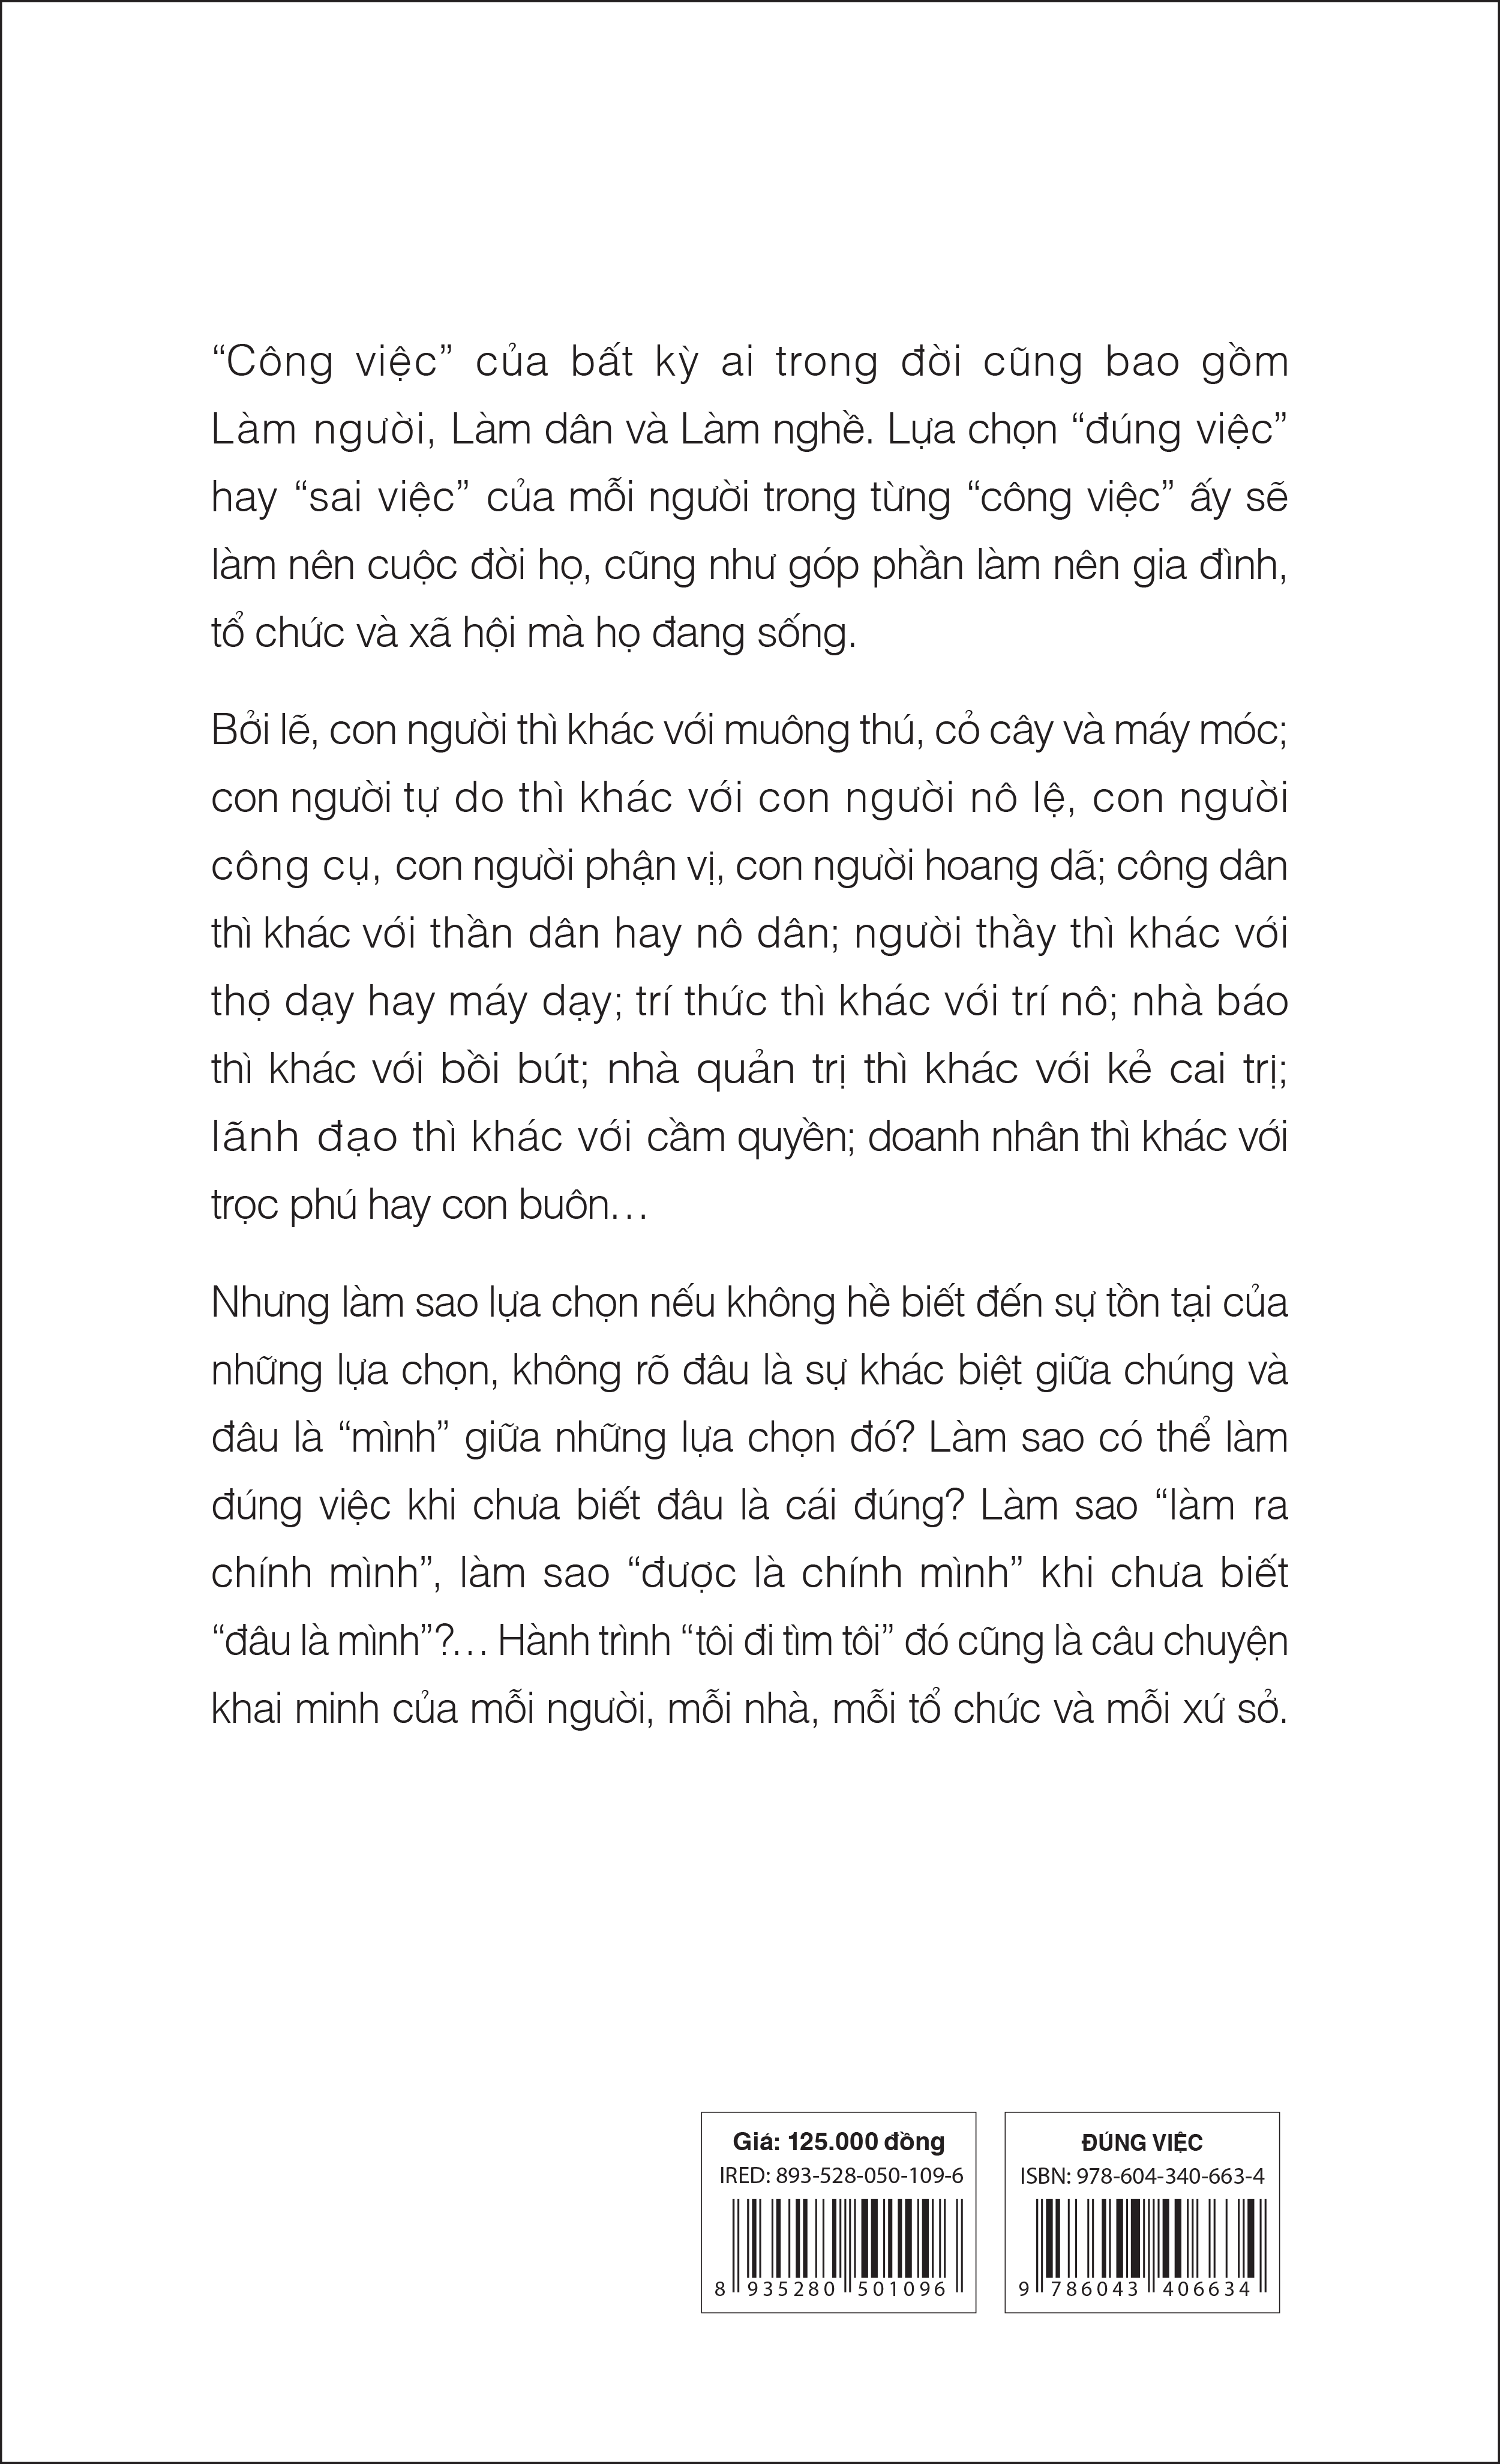 Đúng Việc: Một Góc Nhìn Về Câu Chuyện Khai Minh (Tái Bản lần 13) - Giản Tư Trung